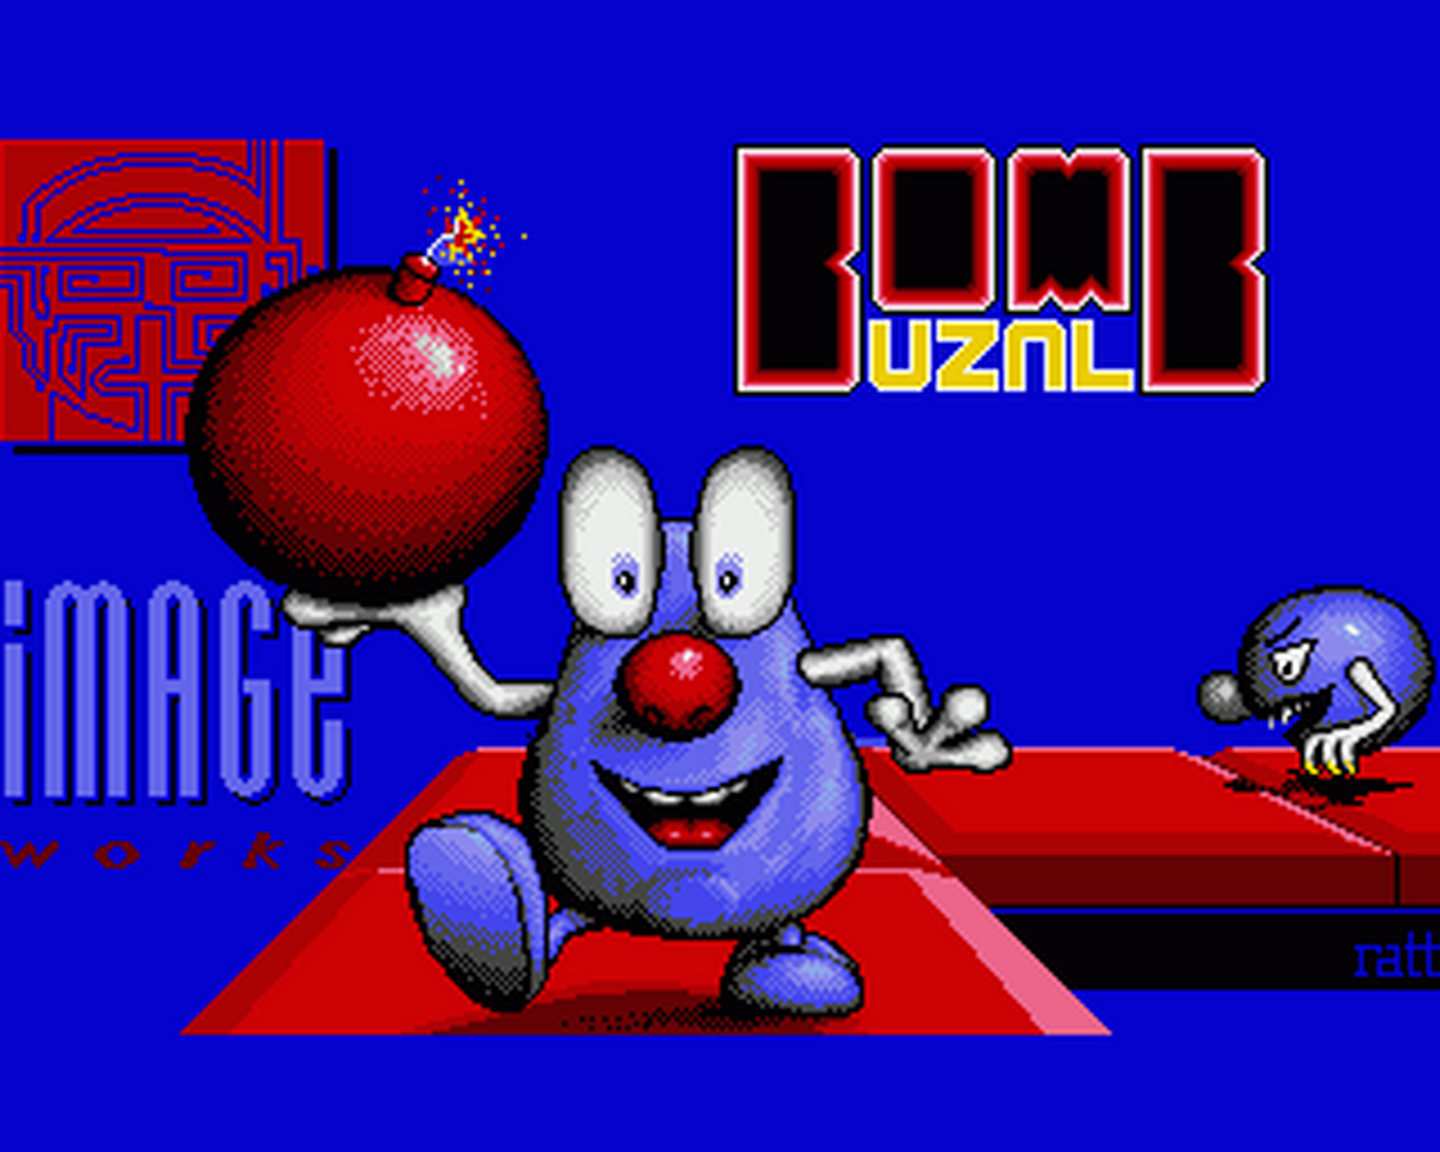 Amiga GameBase Bombuzal Image_Works 1988